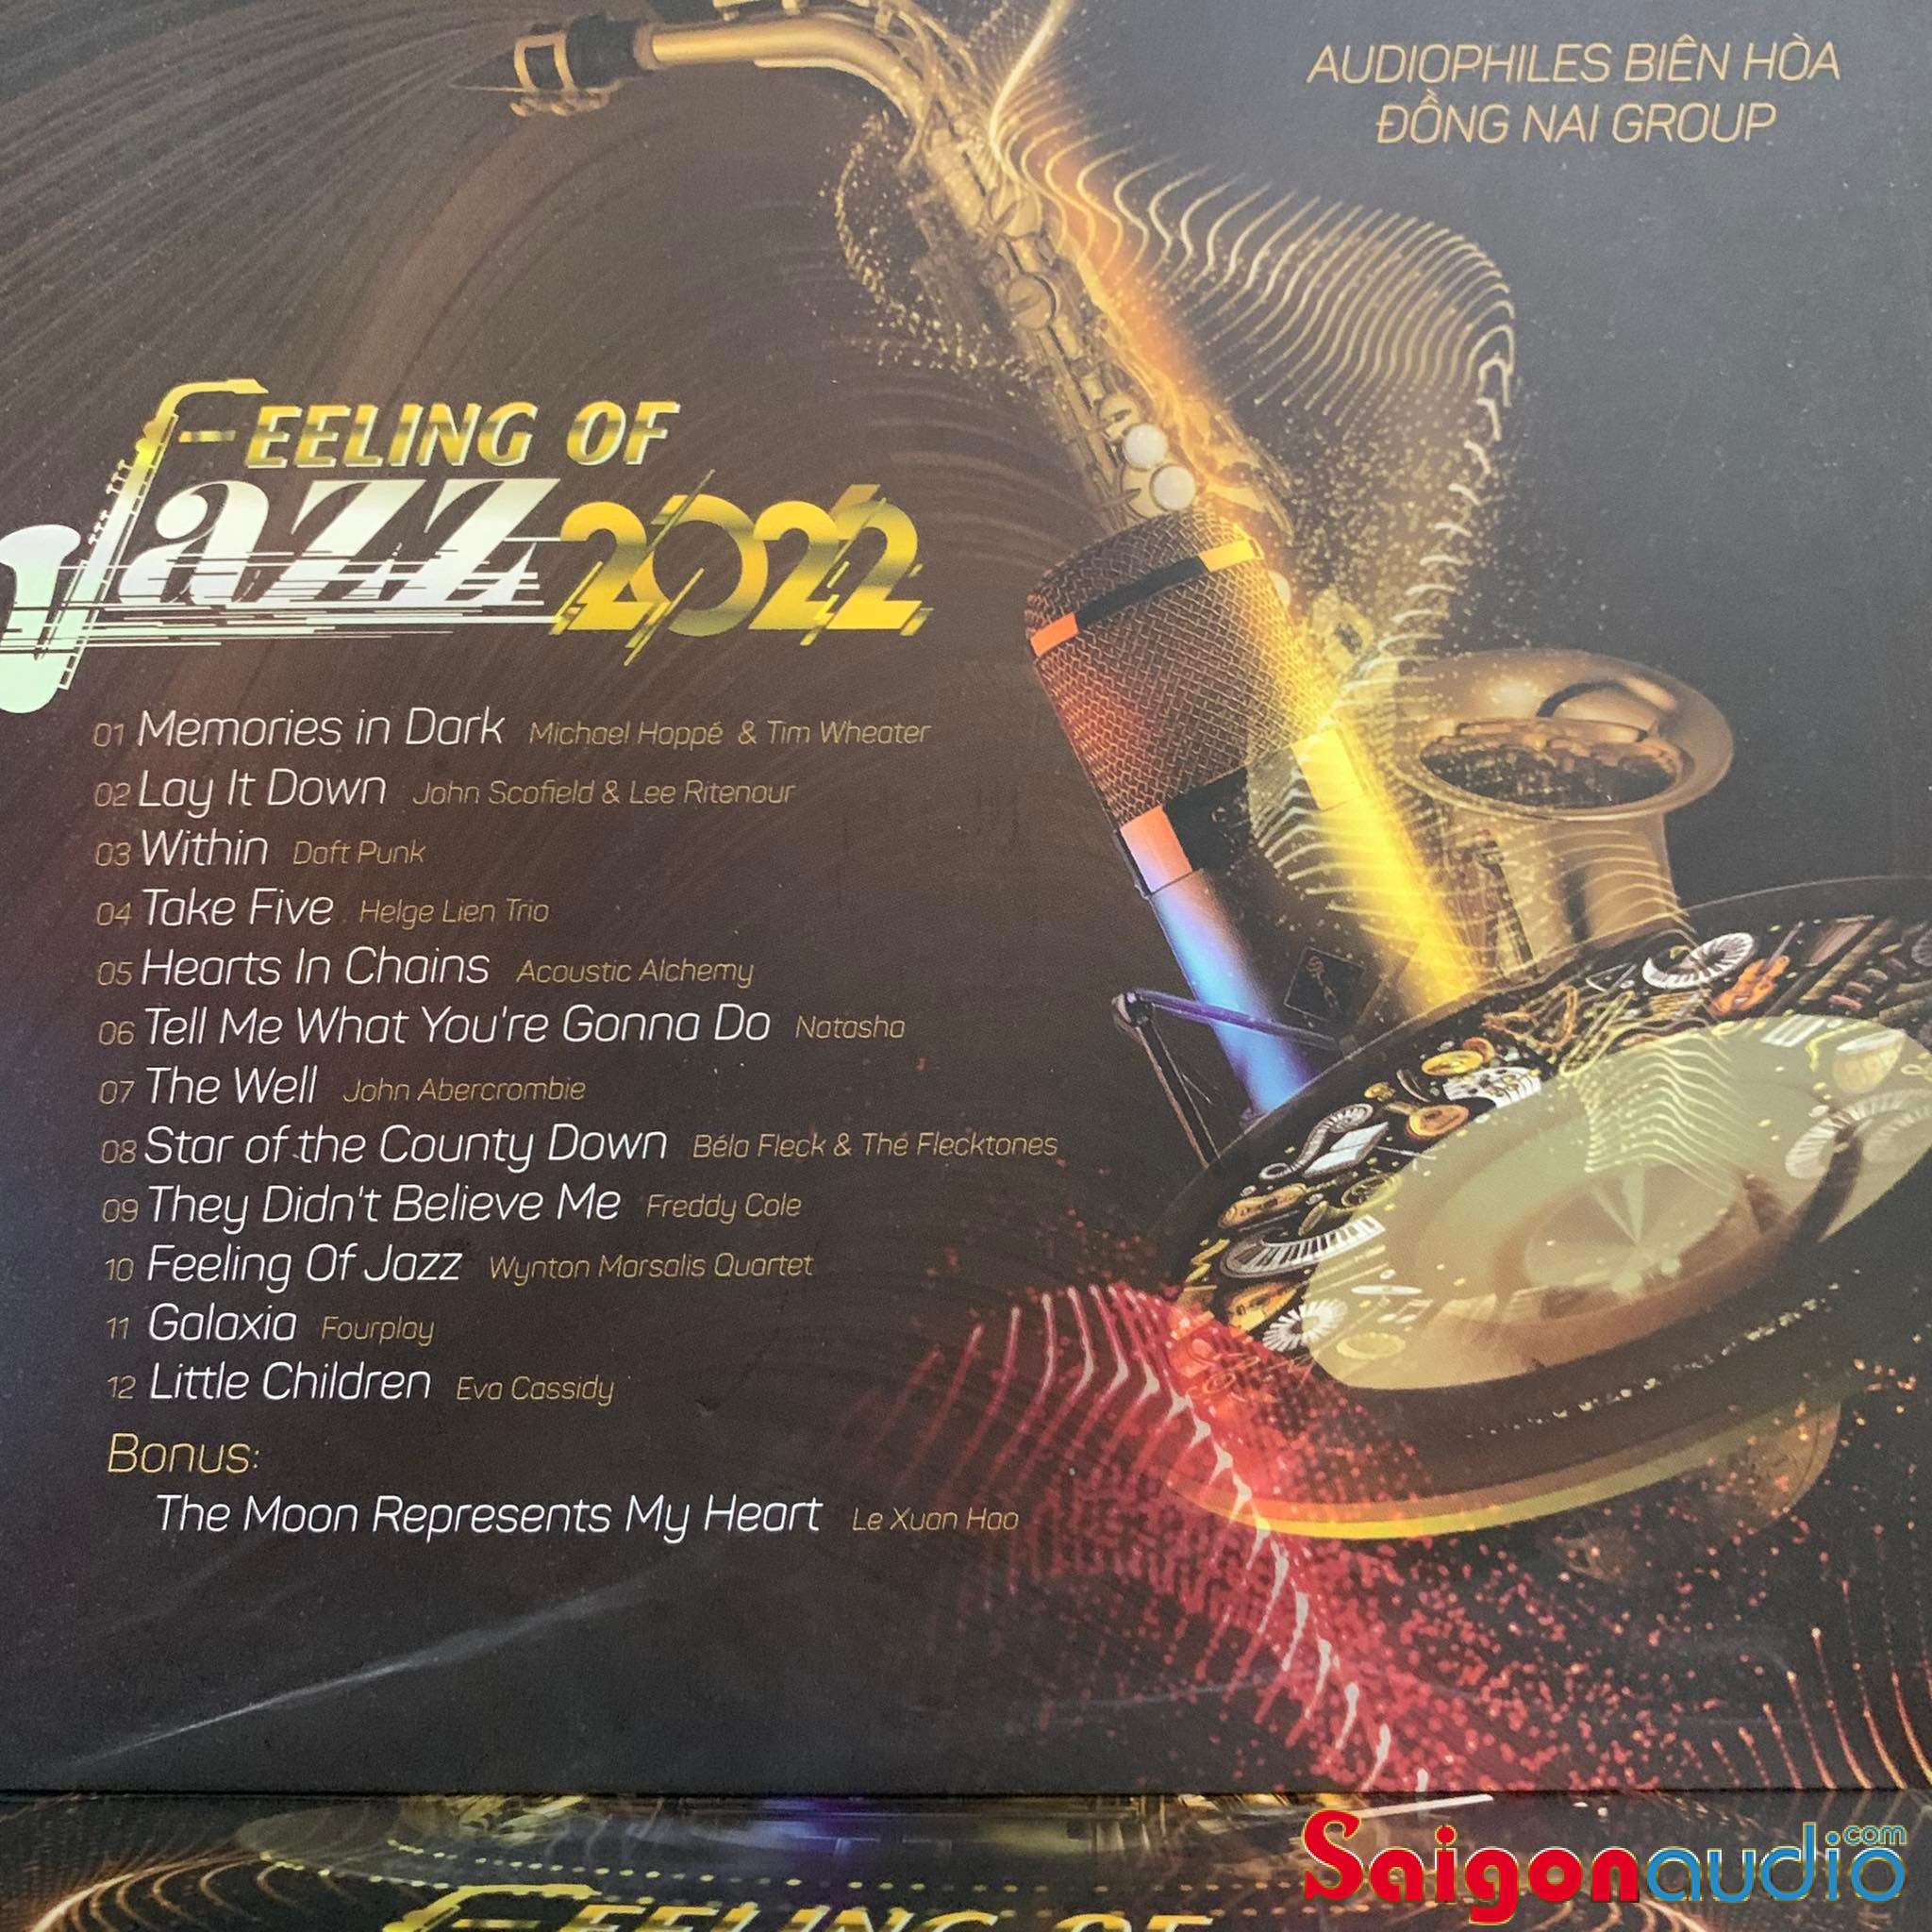 Đĩa CD nhạc Biên Hoà Đồng Nai Audiophile 8th 2022 (Free ship khi mua 2 đĩa CD cùng hoặc khác loại)